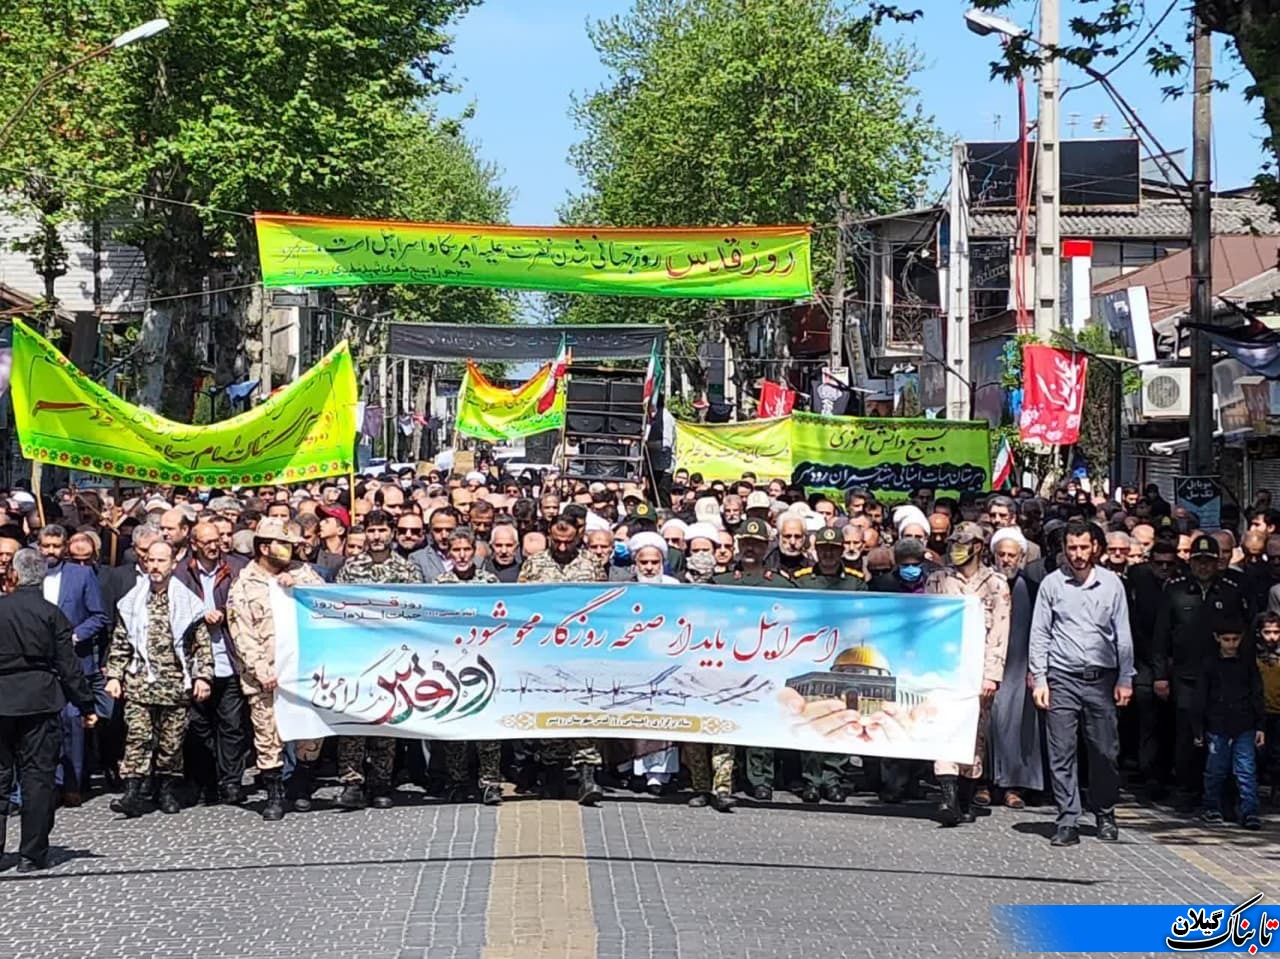 راهپیمایی روز قدس در رودسر همزمان با آخرین جمعه ماه رمضان برگزار شد.